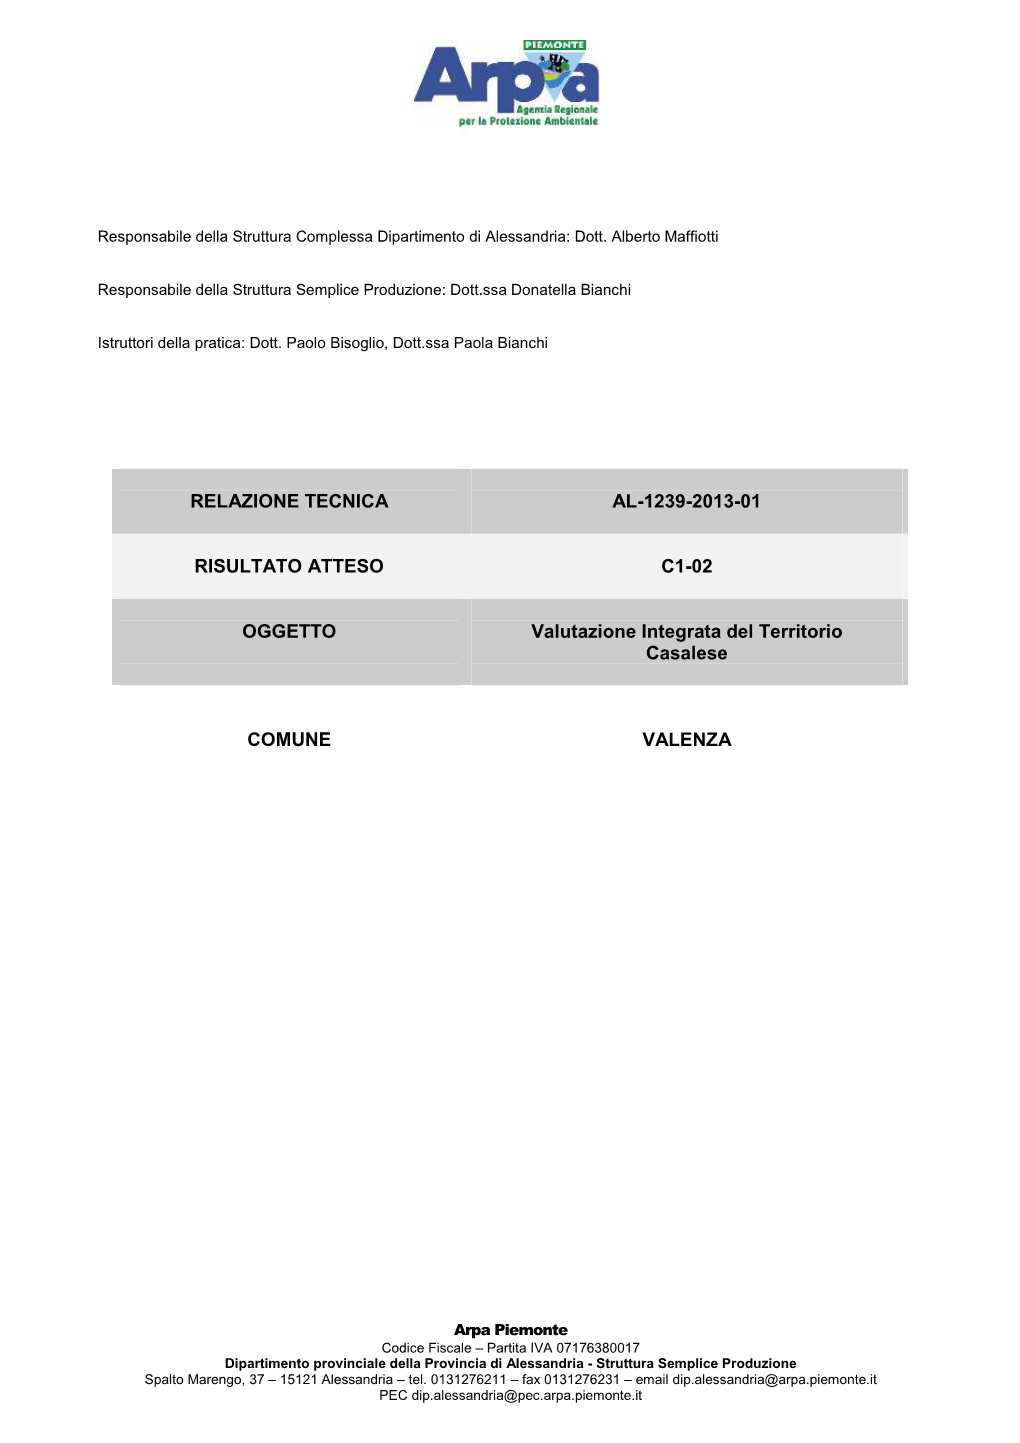 Relazione Tecnica Al-1239-2013-01